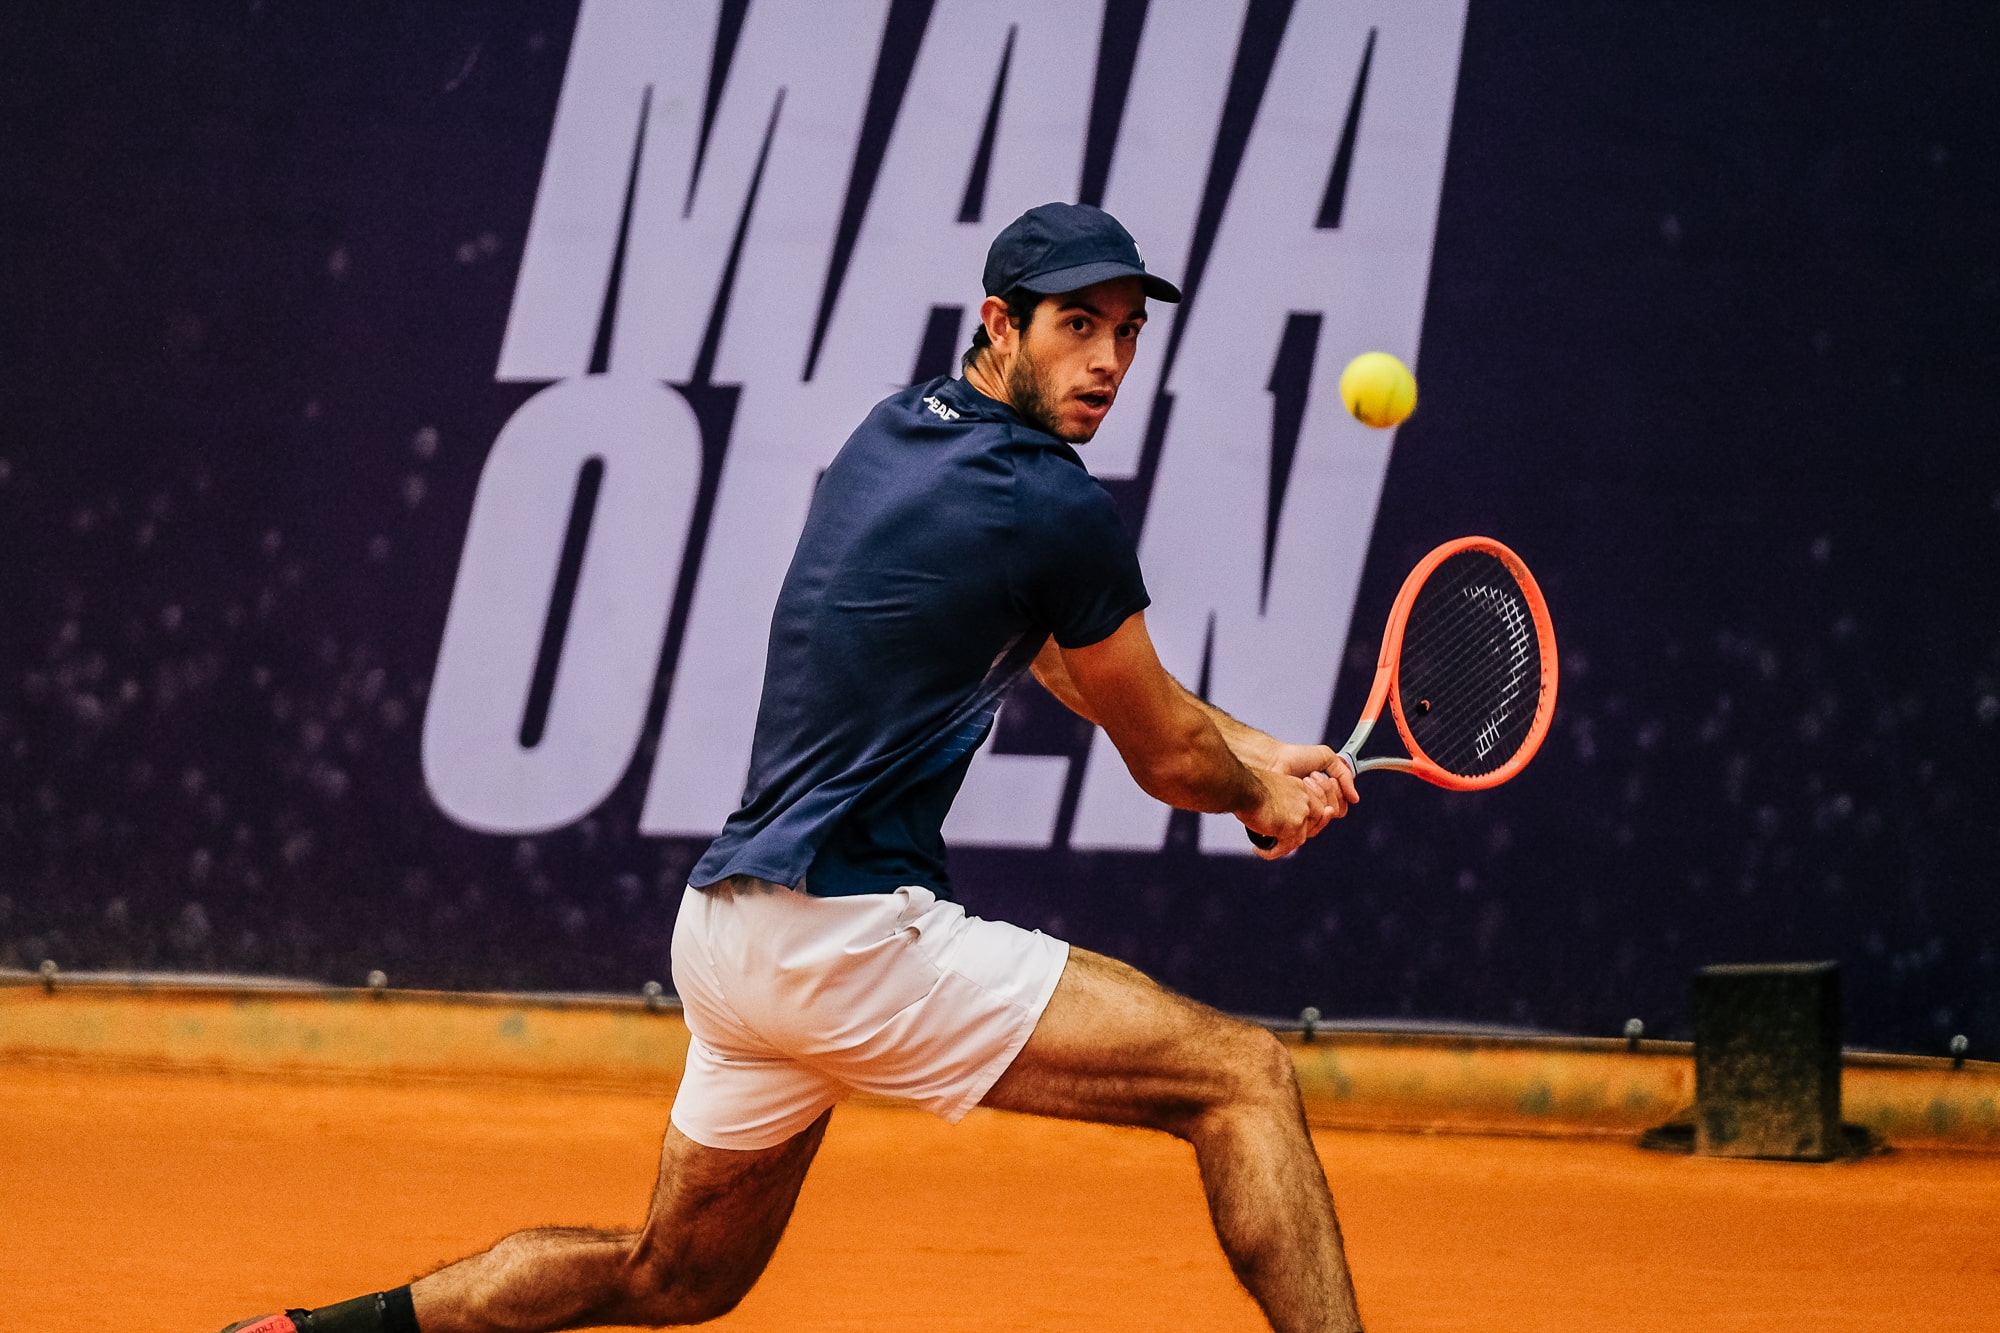 Nuno Borges estreia-se com vitória em torneios ATP 500 - Renascença